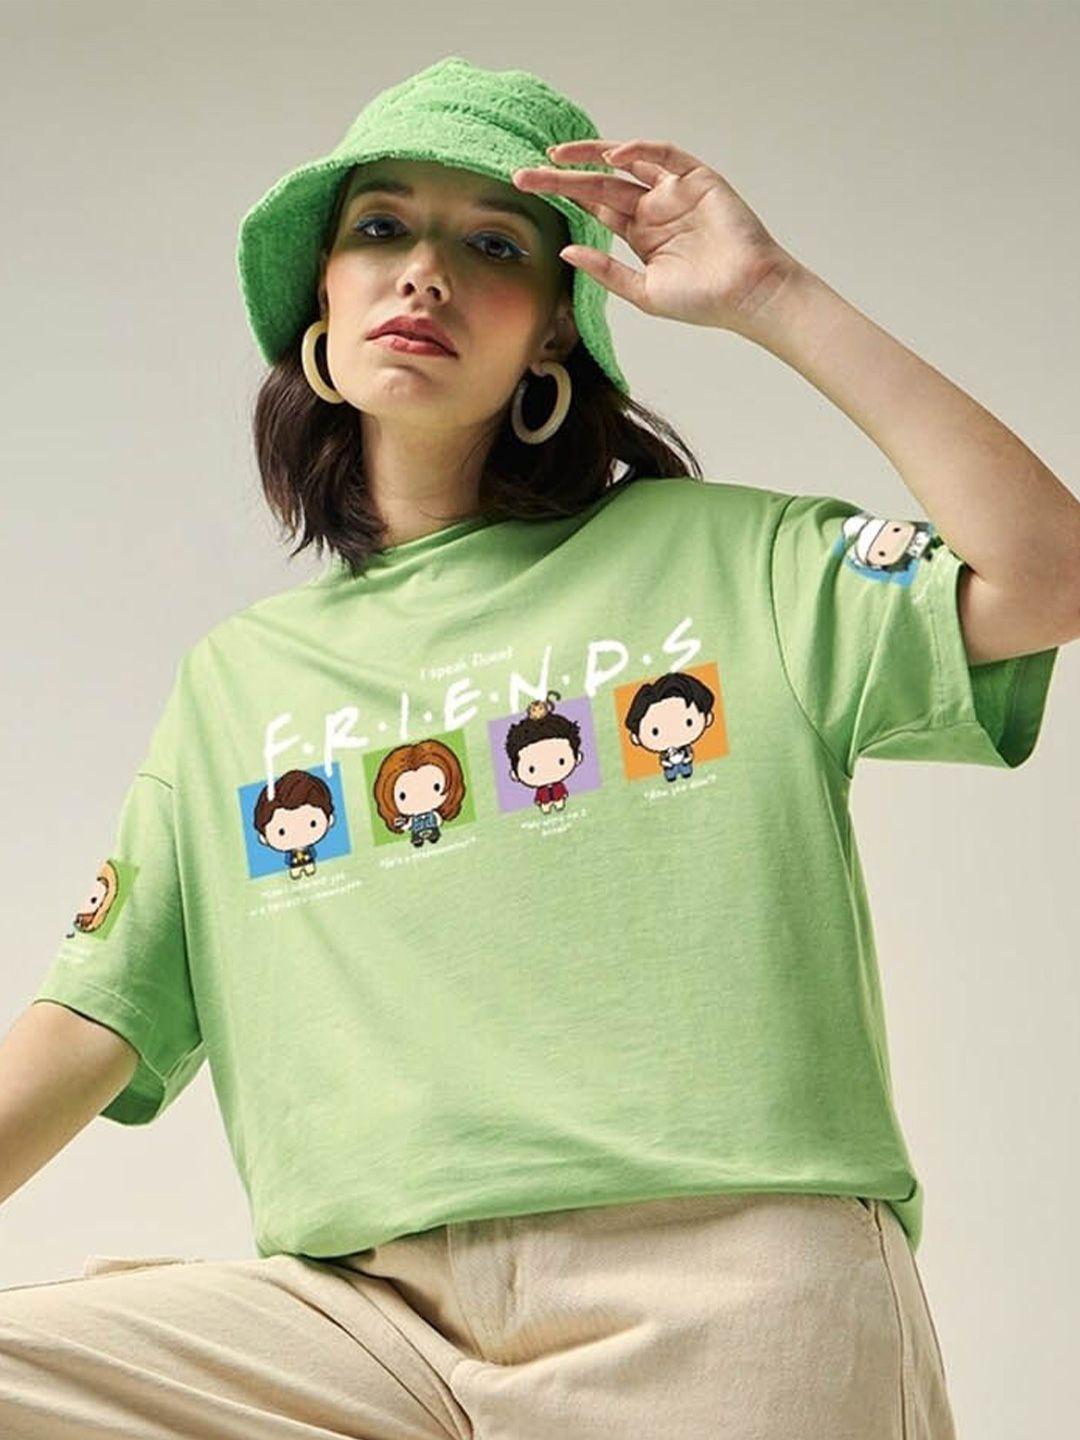 bewakoof women green printed t-shirt